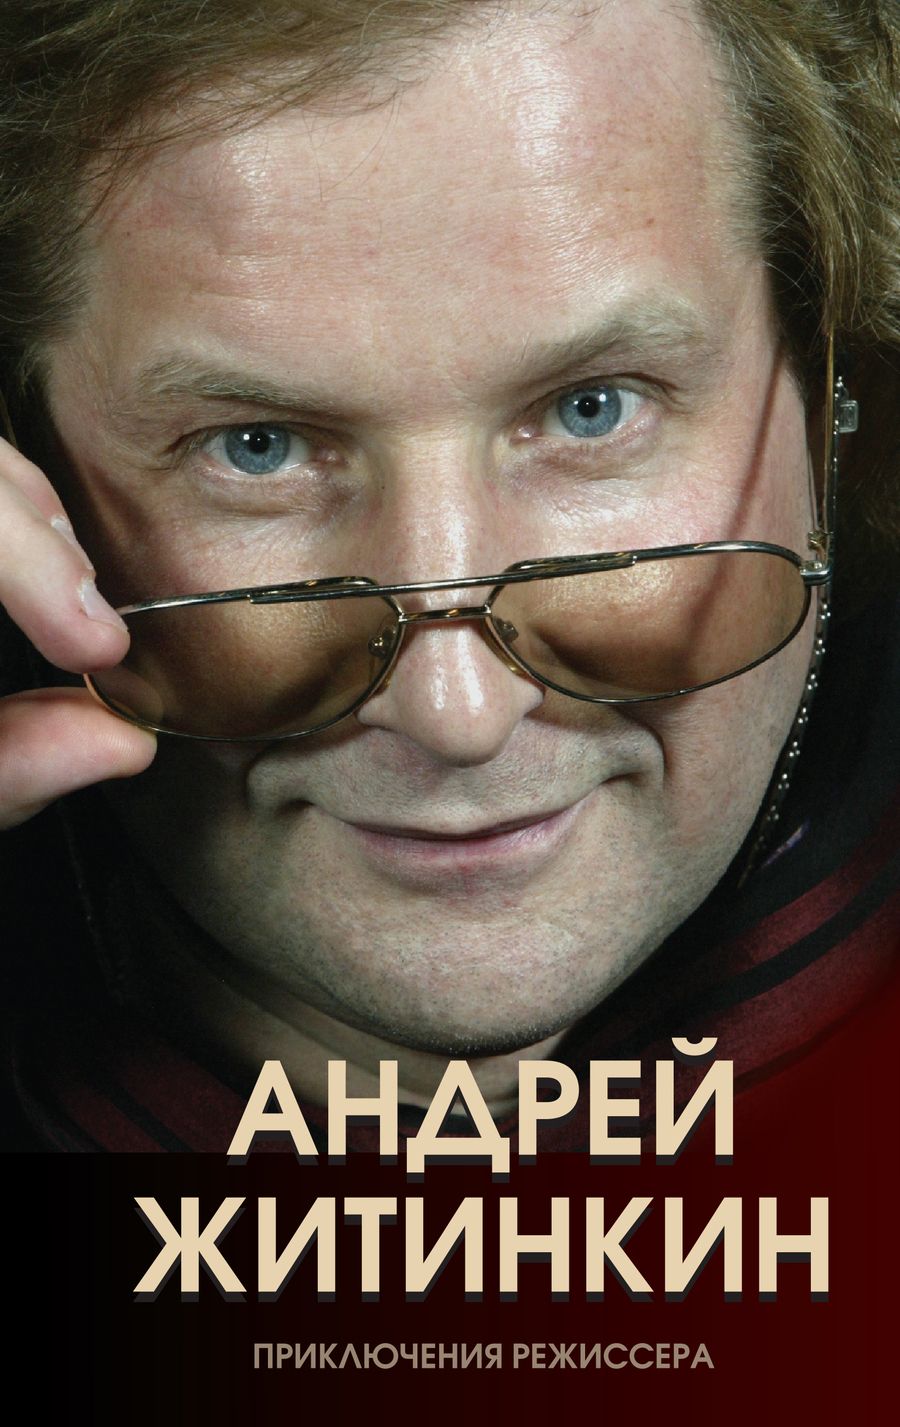 Обложка книги "Андрей Житинкин: Приключения режиссера"